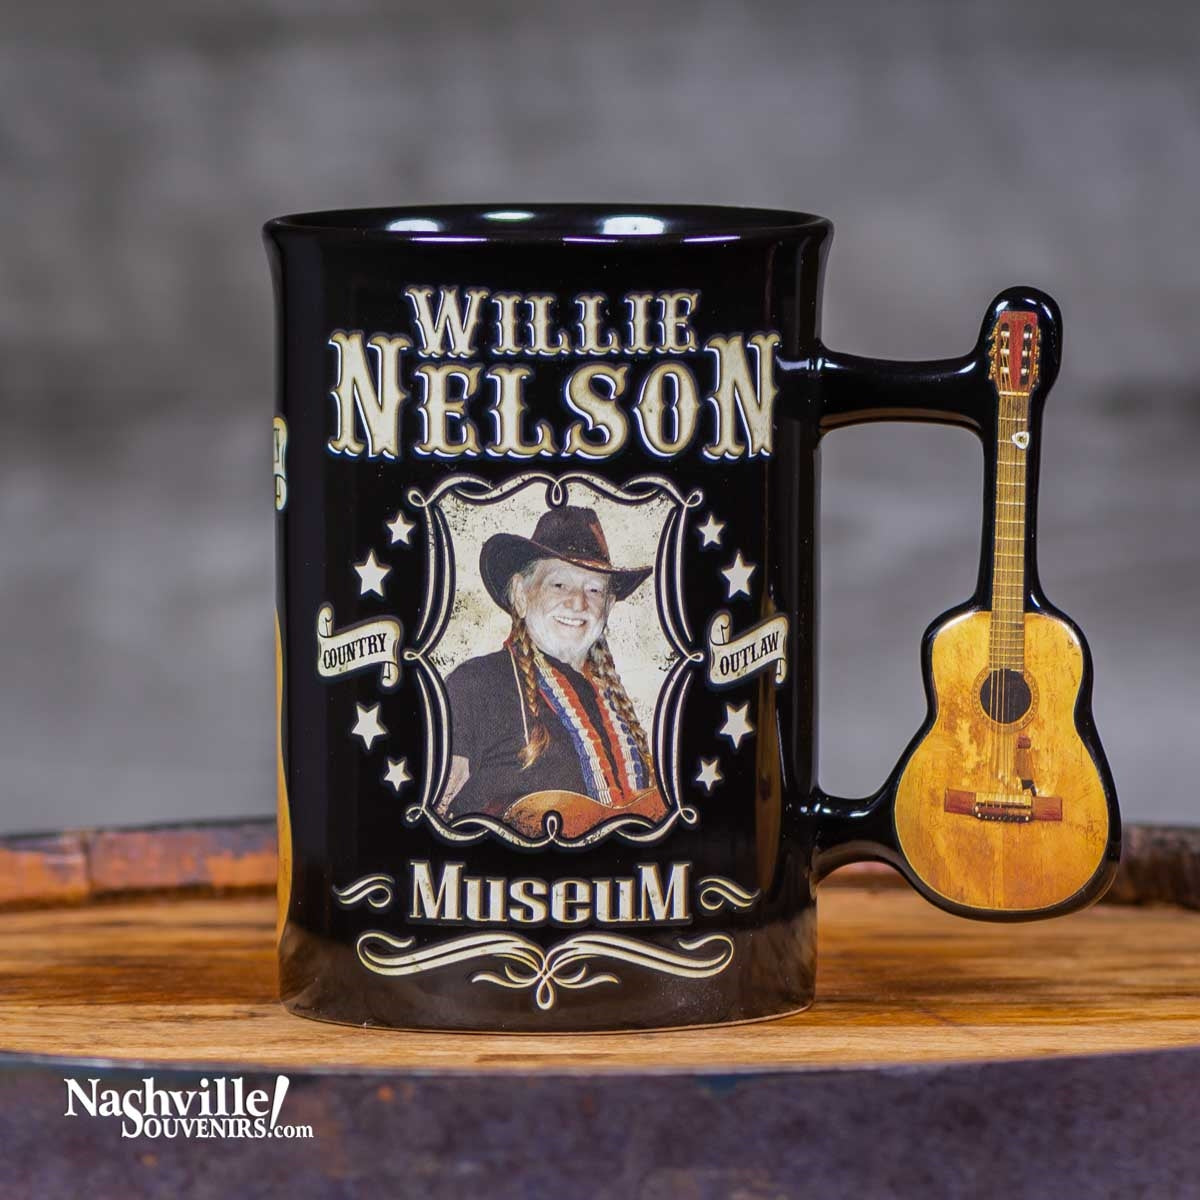 Willie Nelson "Trigger" Mug